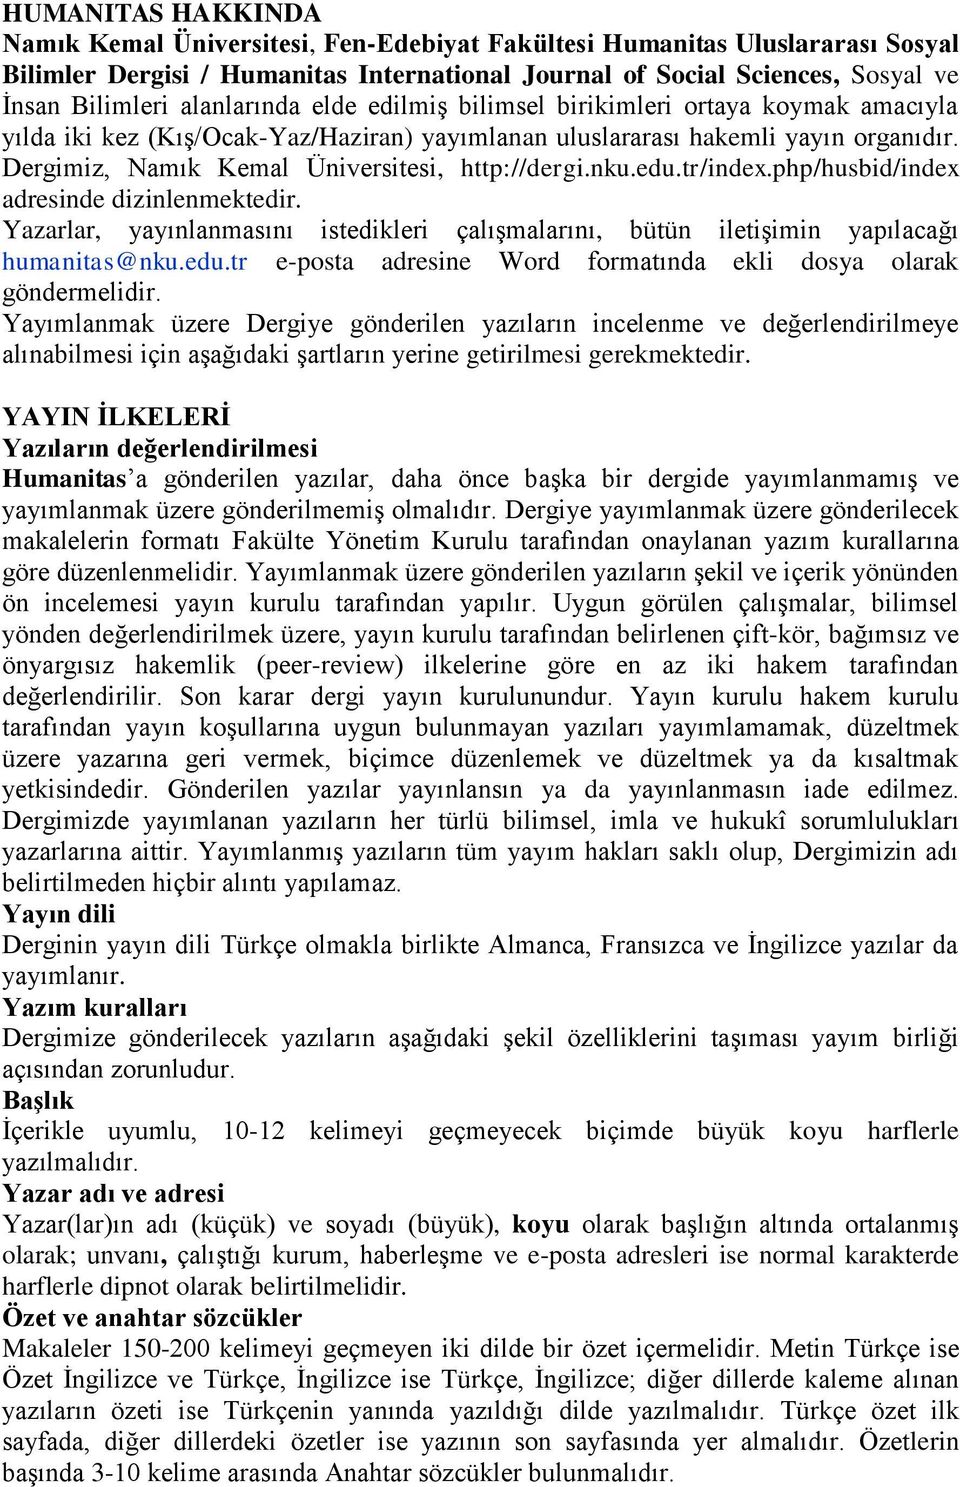 Dergimiz, Namık Kemal Üniversitesi, http://dergi.nku.edu.tr/index.php/husbid/index adresinde dizinlenmektedir.